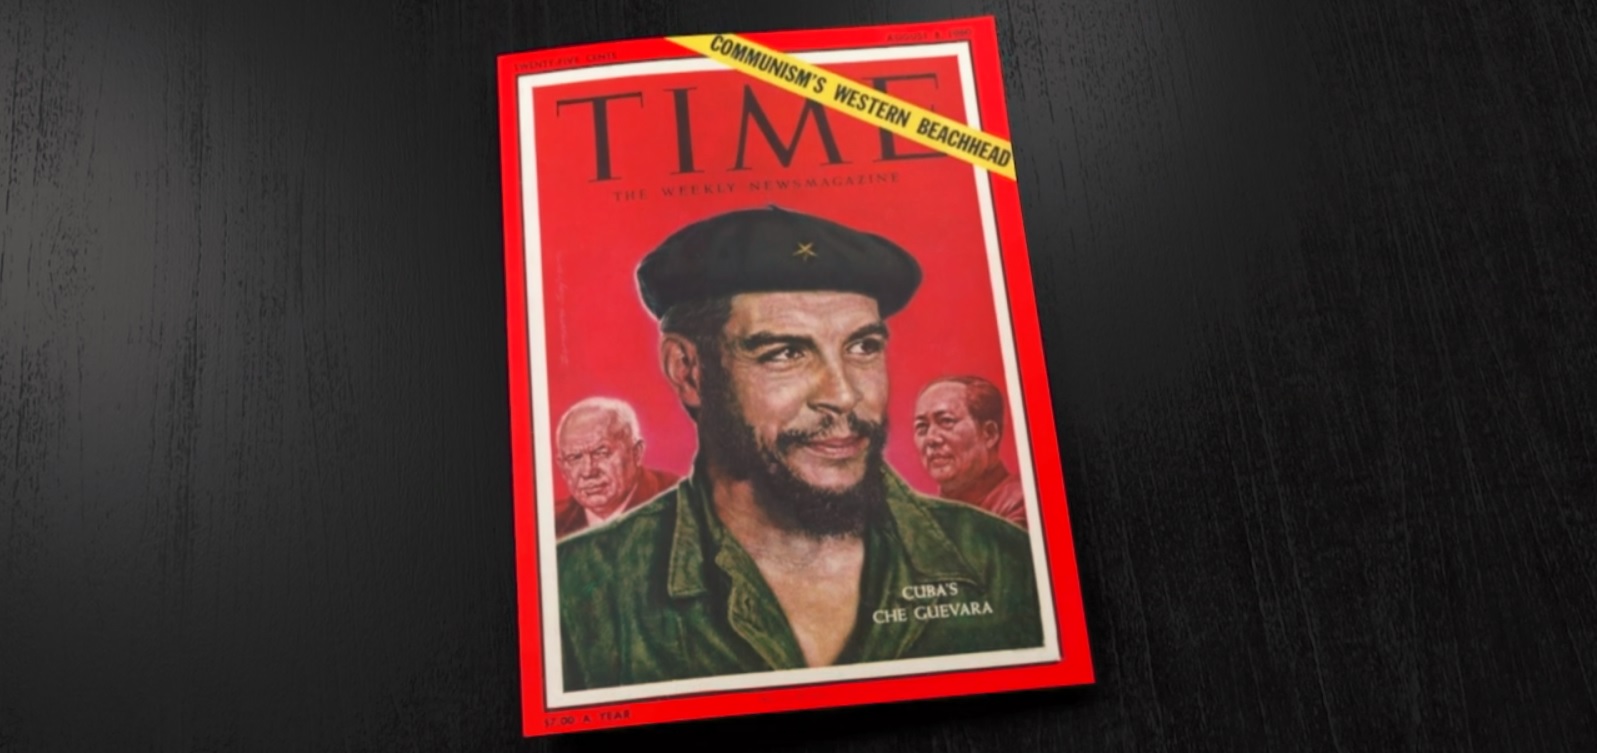 Che Guevara Beyond the Myth documentary movie